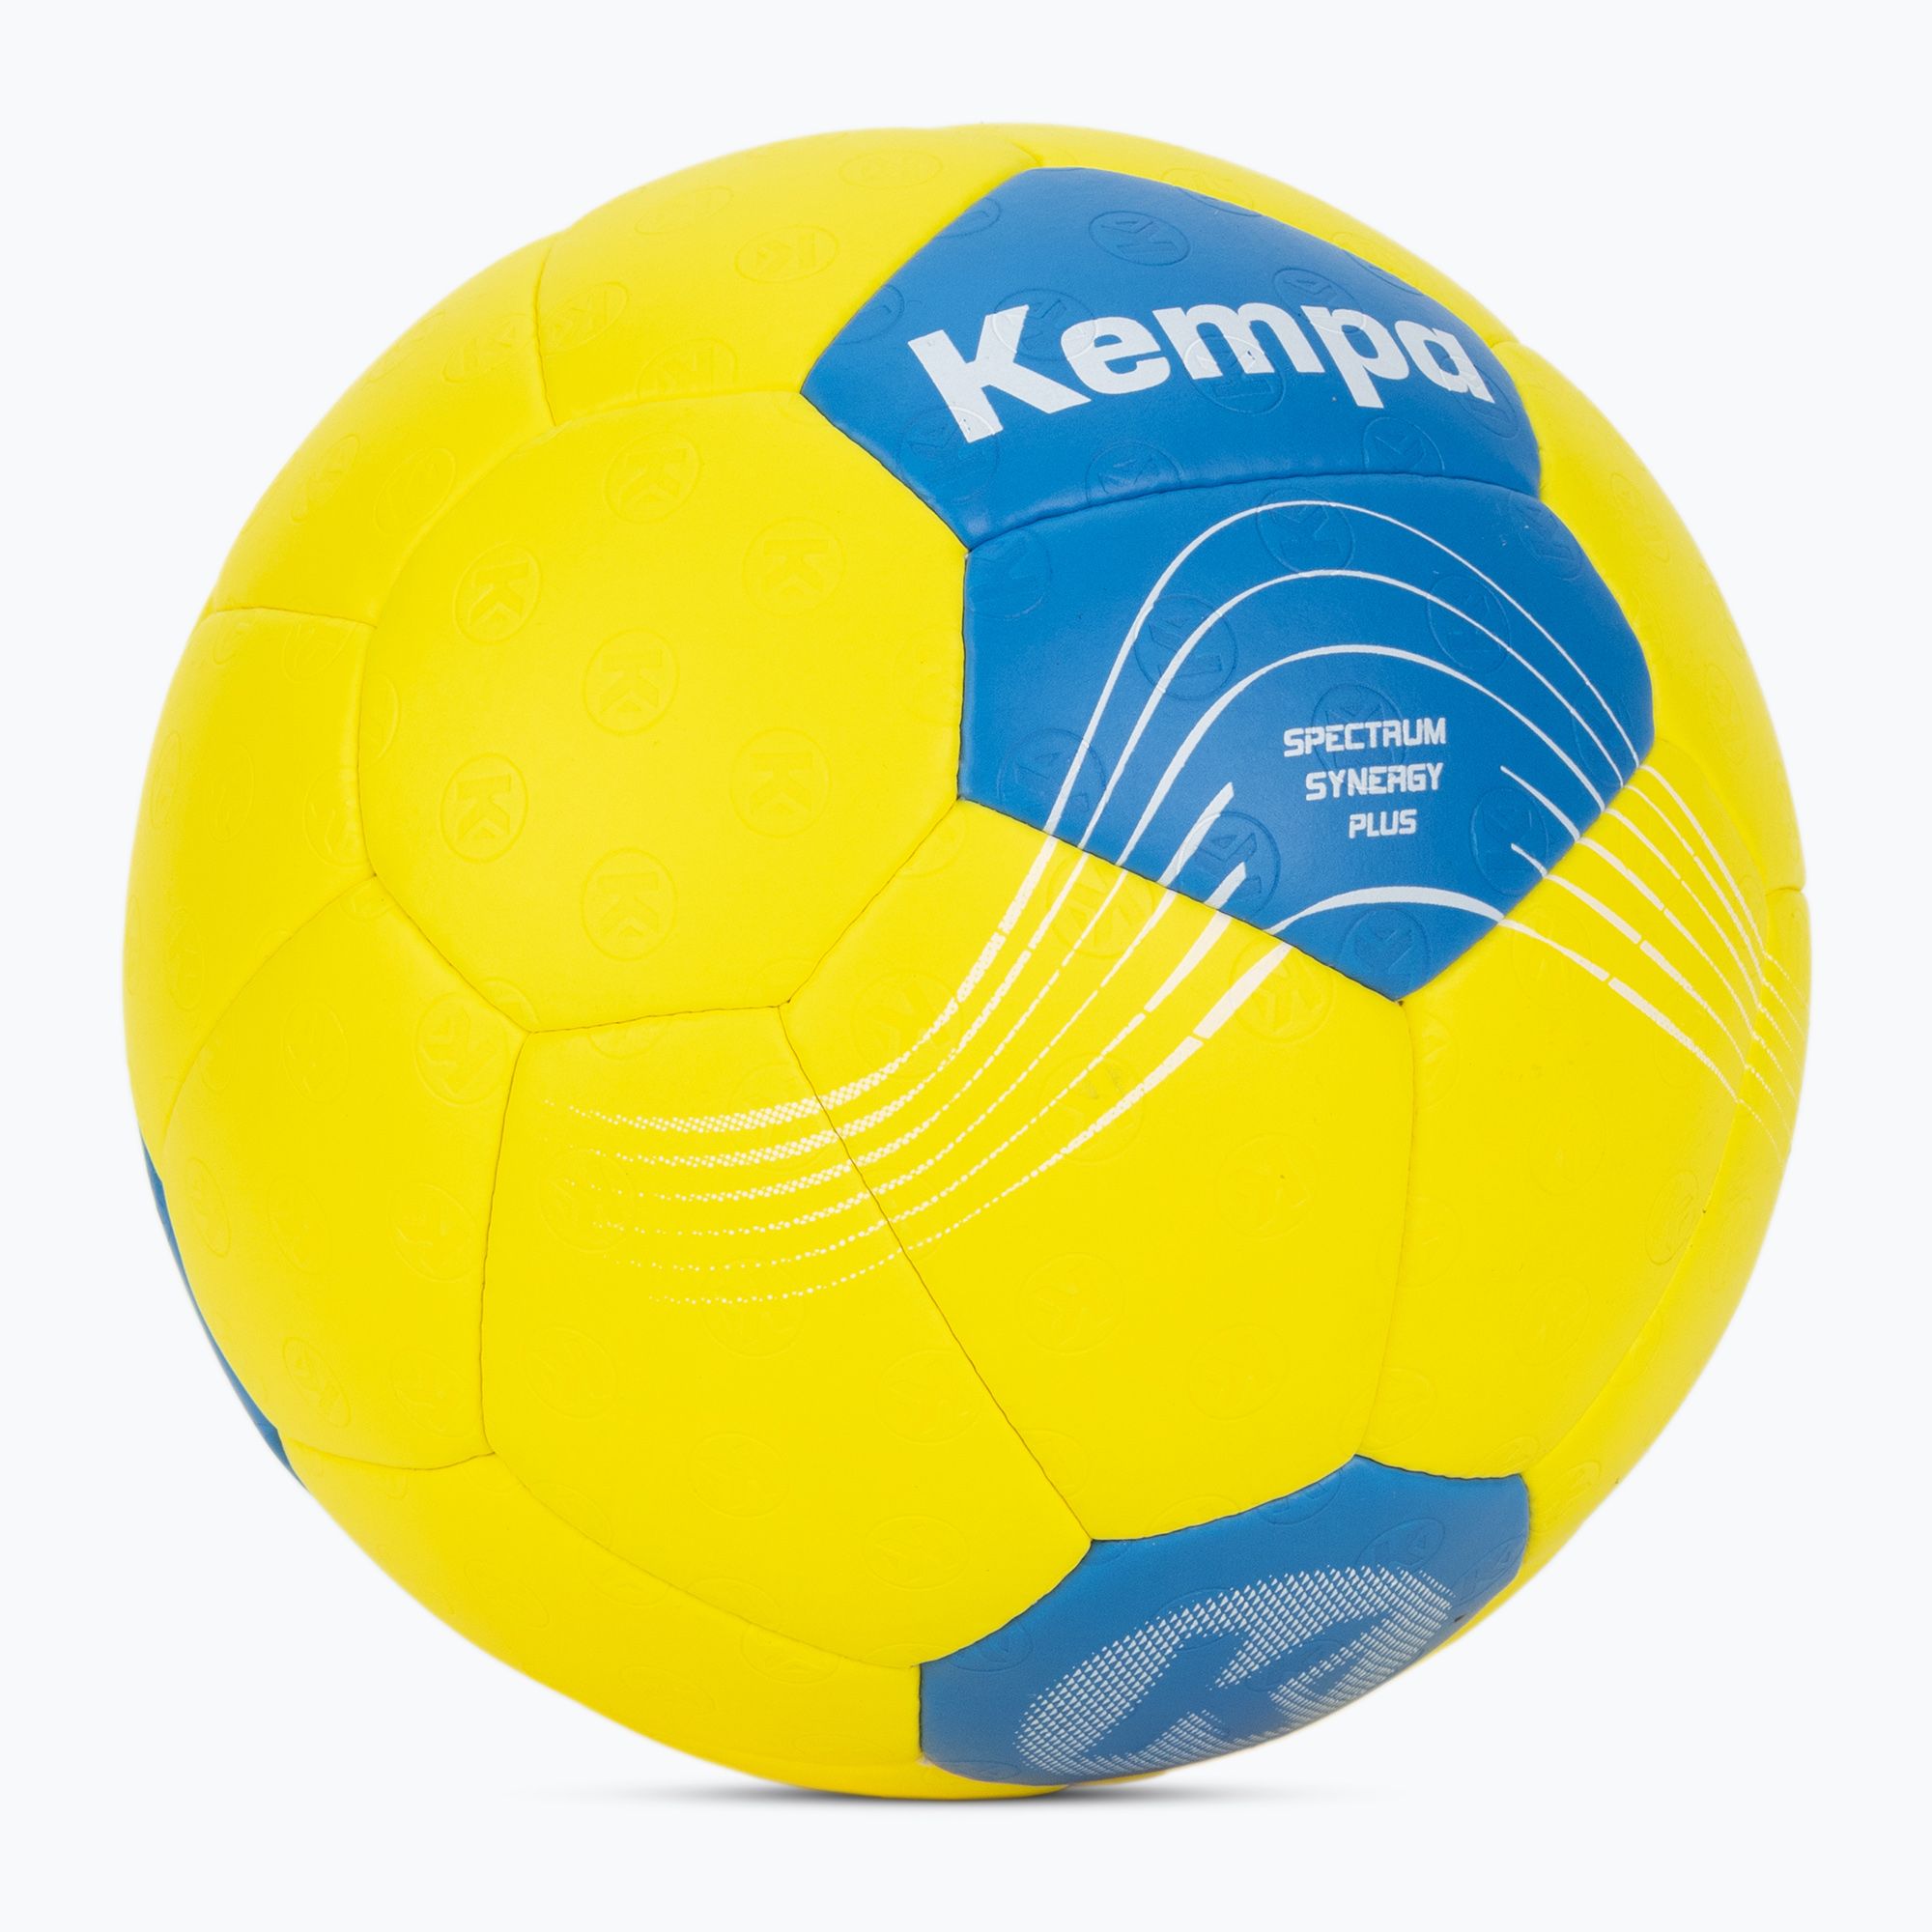 Piłka do piłki ręcznej Kempa Spectrum Synergy Plus żółta/niebieska rozmiar 2 zdjęcie nr 2